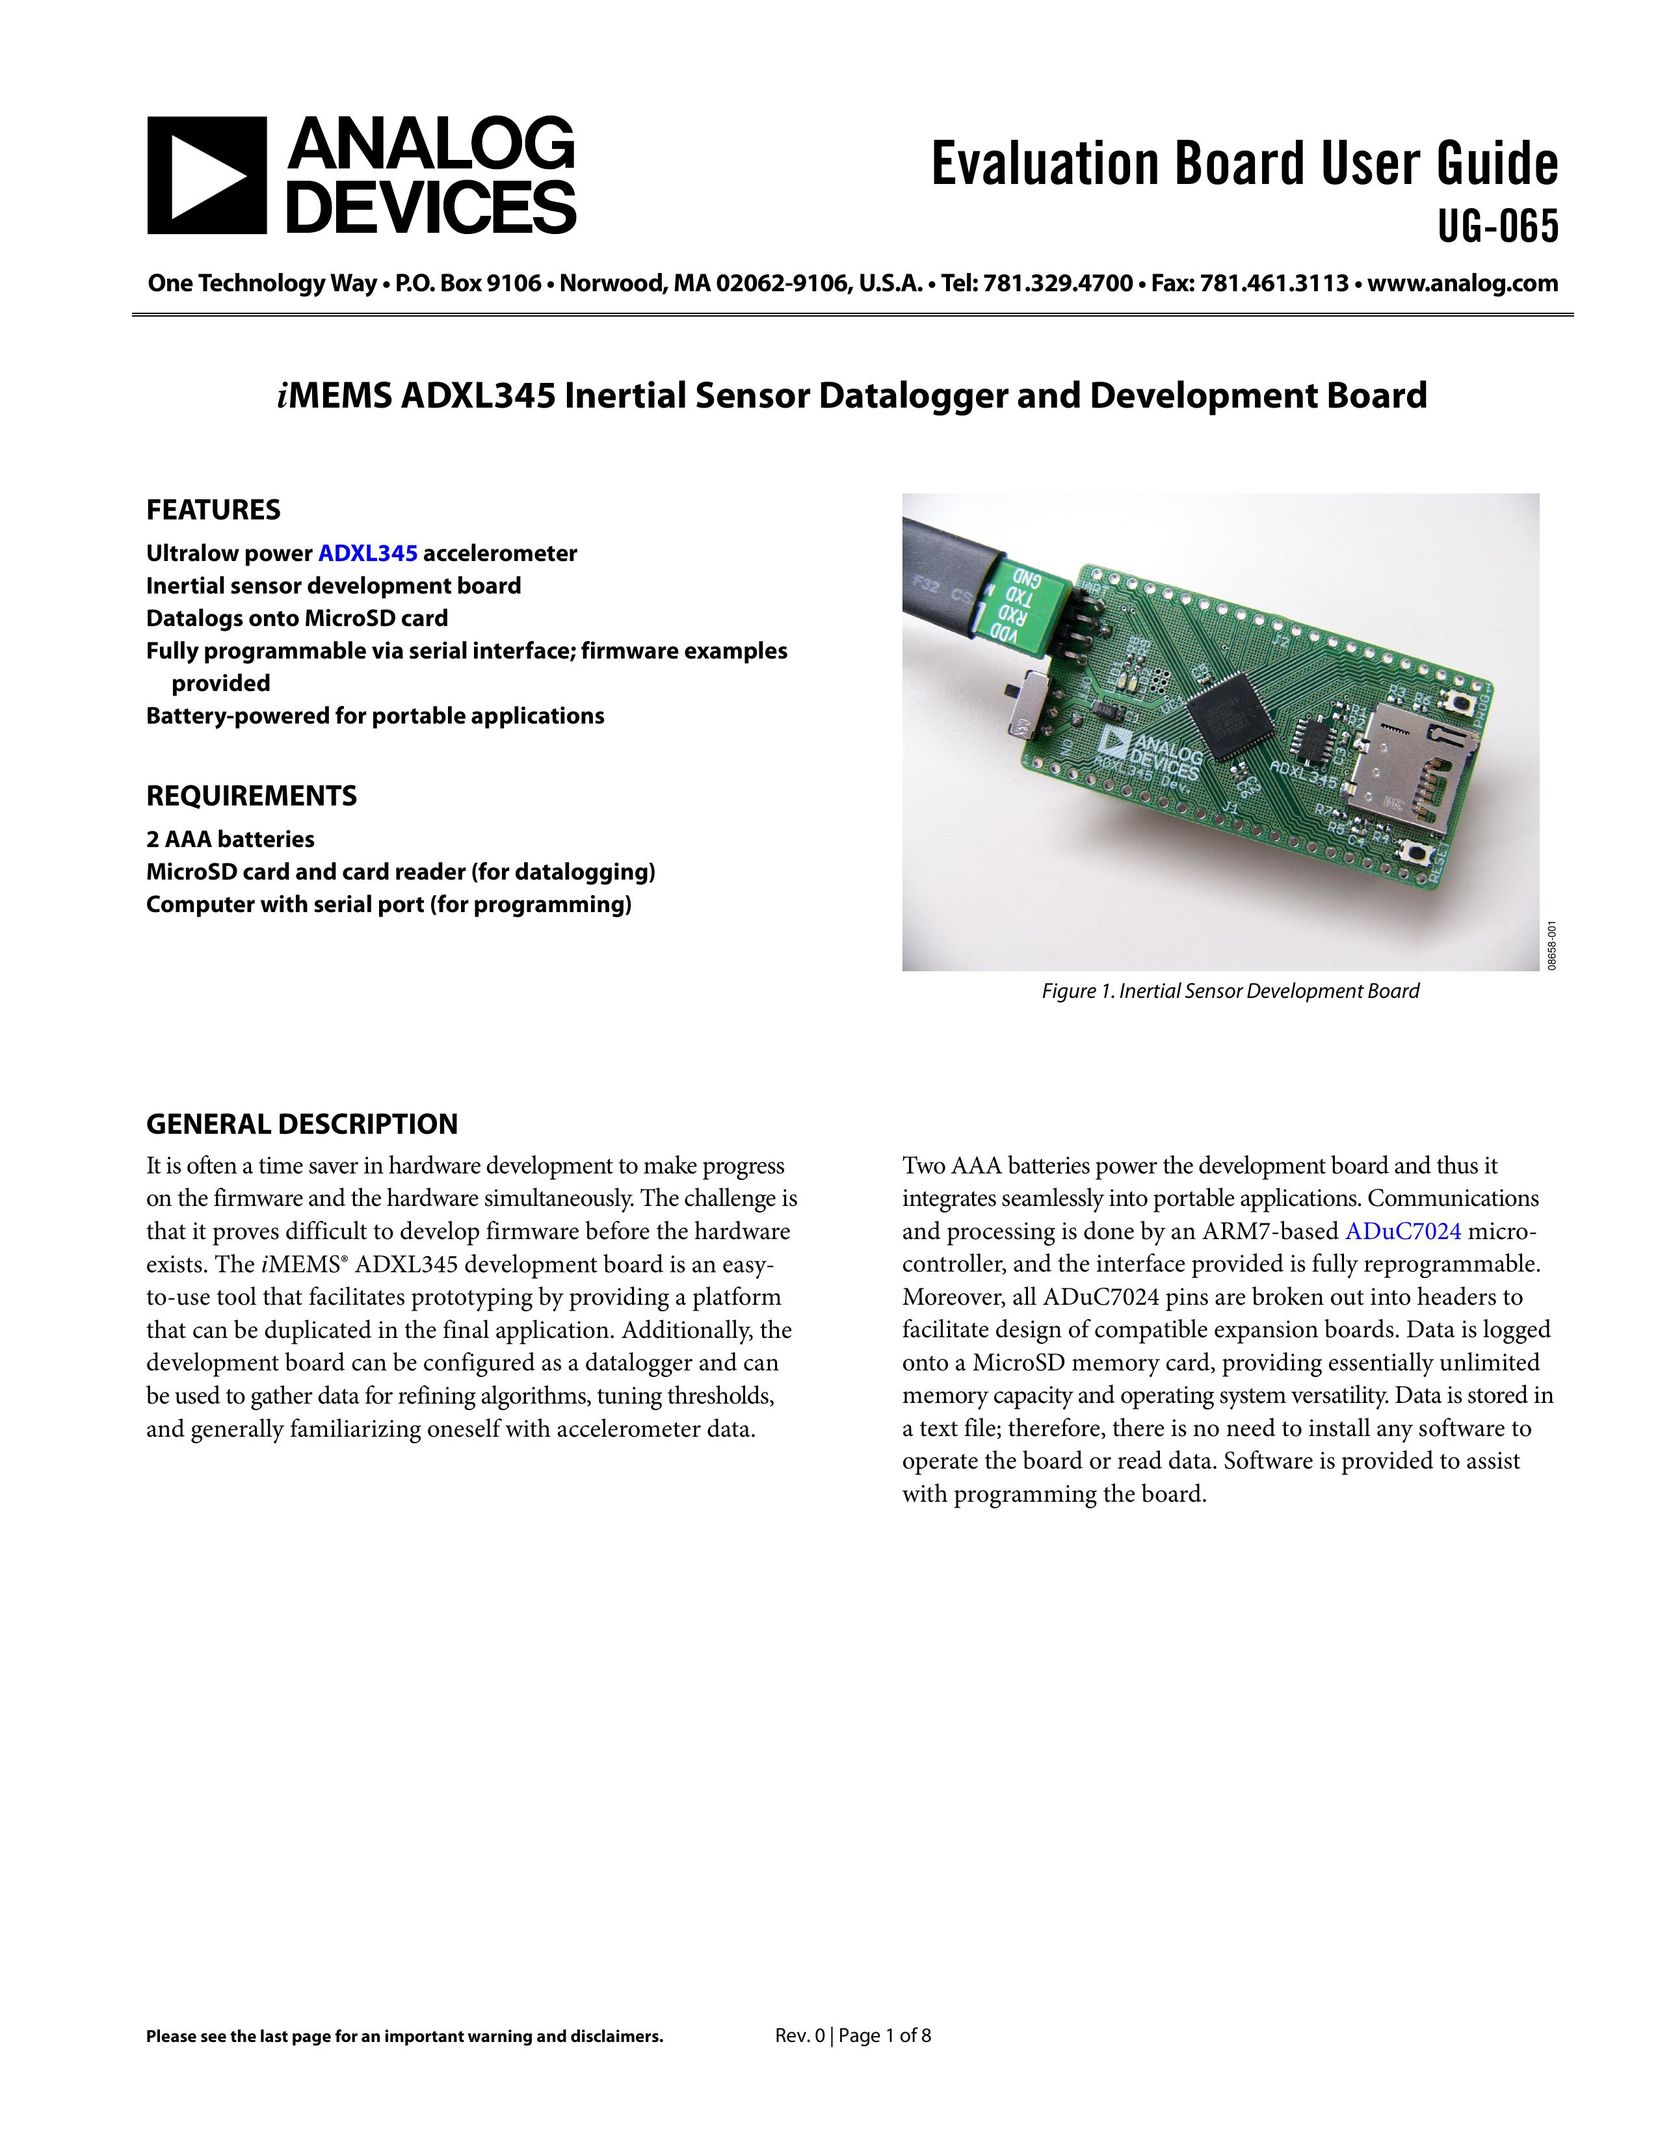 Analog Devices UG-065 Stud Sensor User Manual